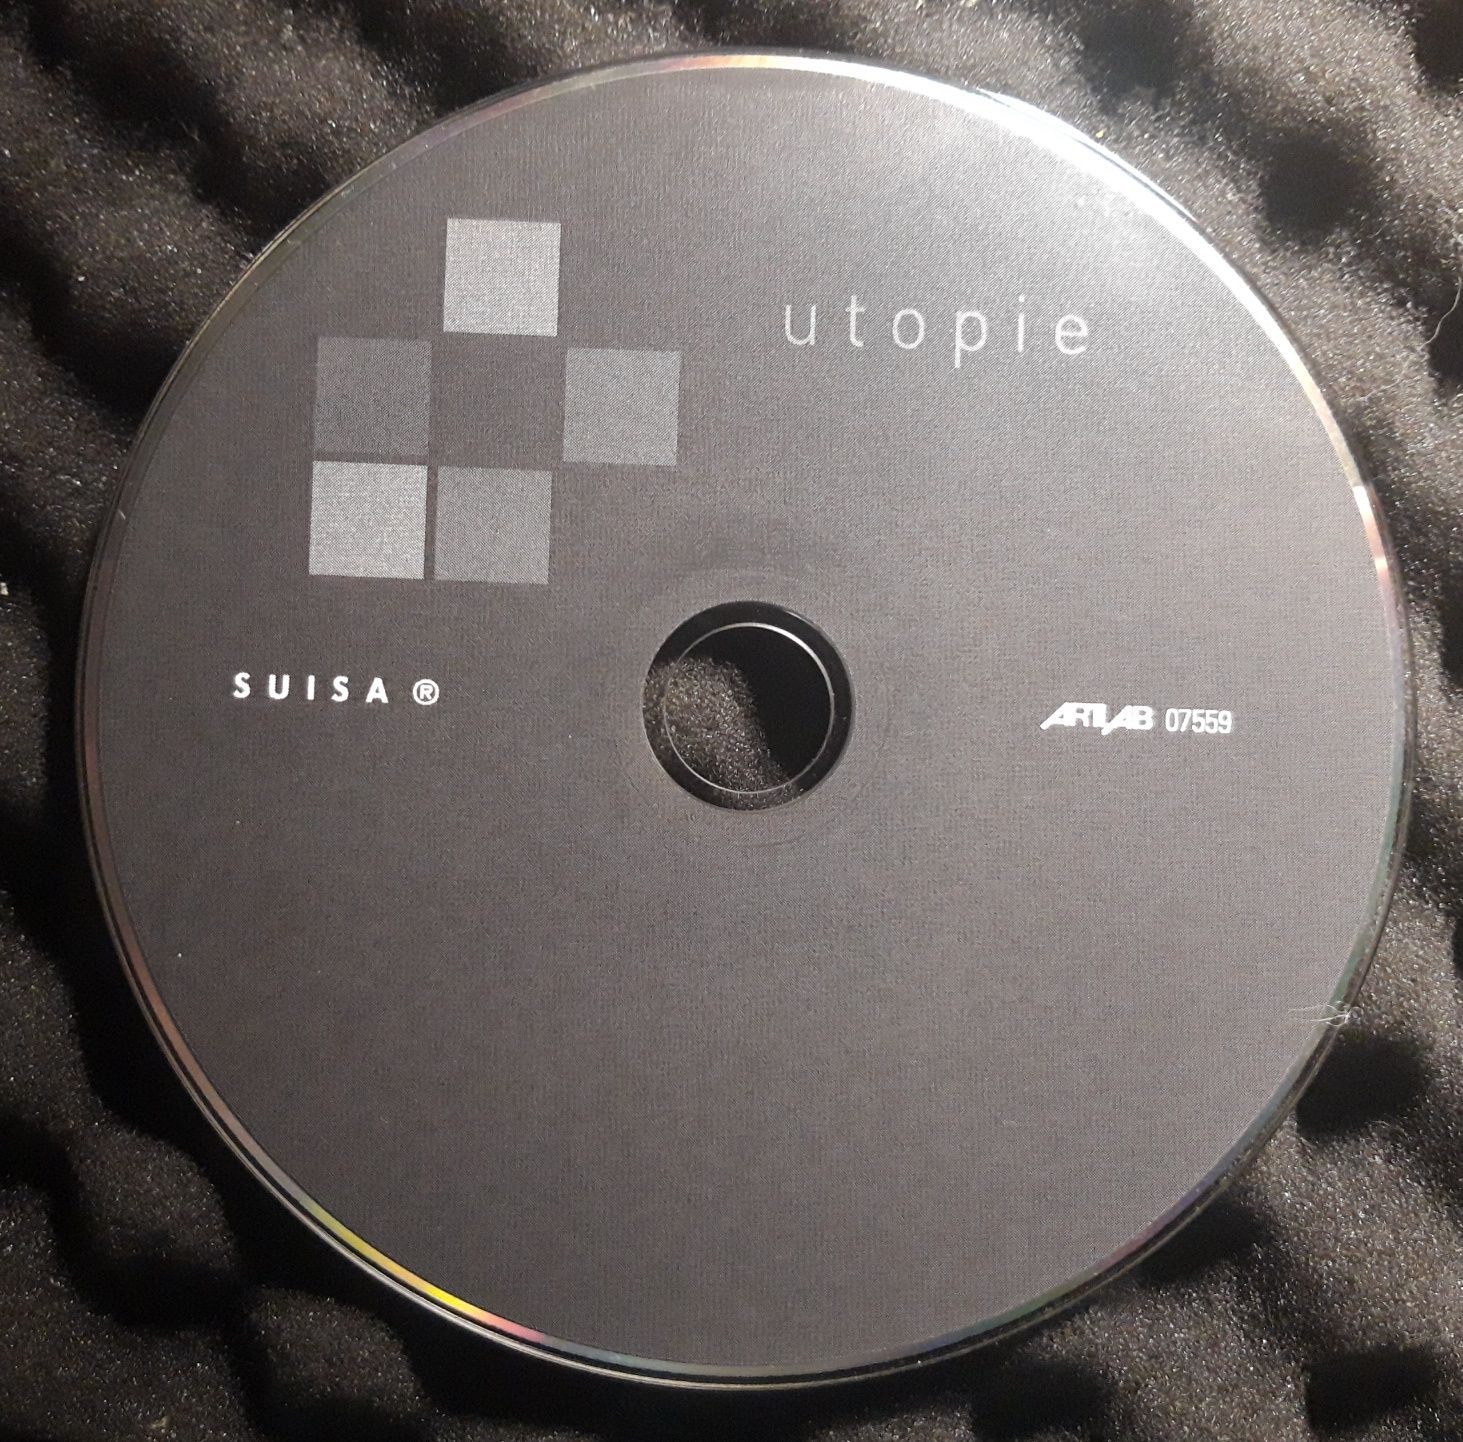 Utopie (CD, 2007)